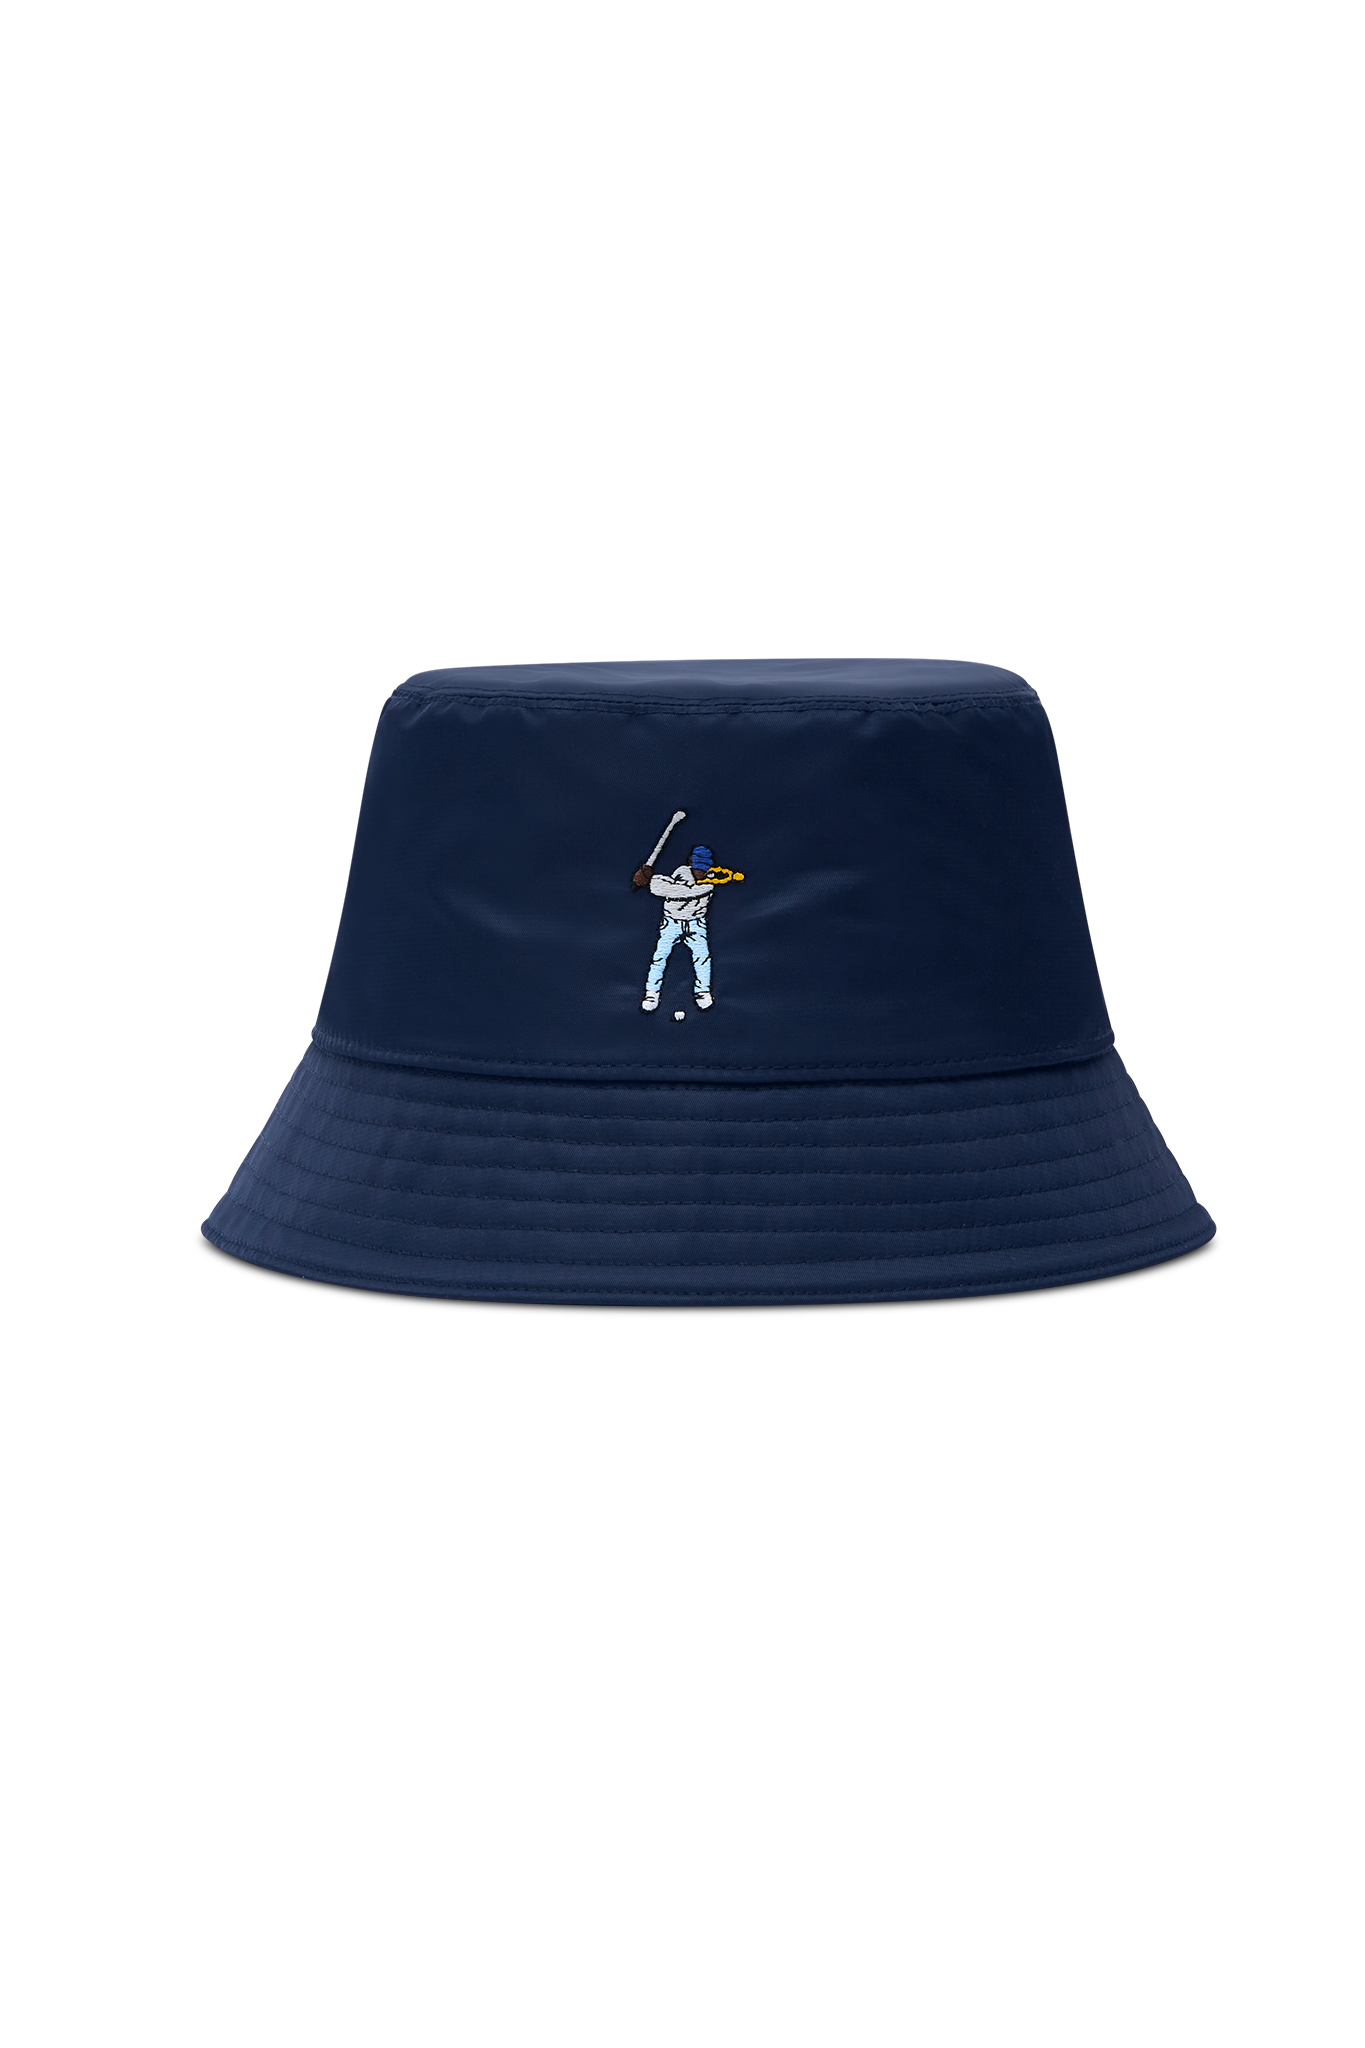 insMercedes Benz 2021 New Baseball Cap Summer Outside Hats for Men Women  Sports Golf Cap